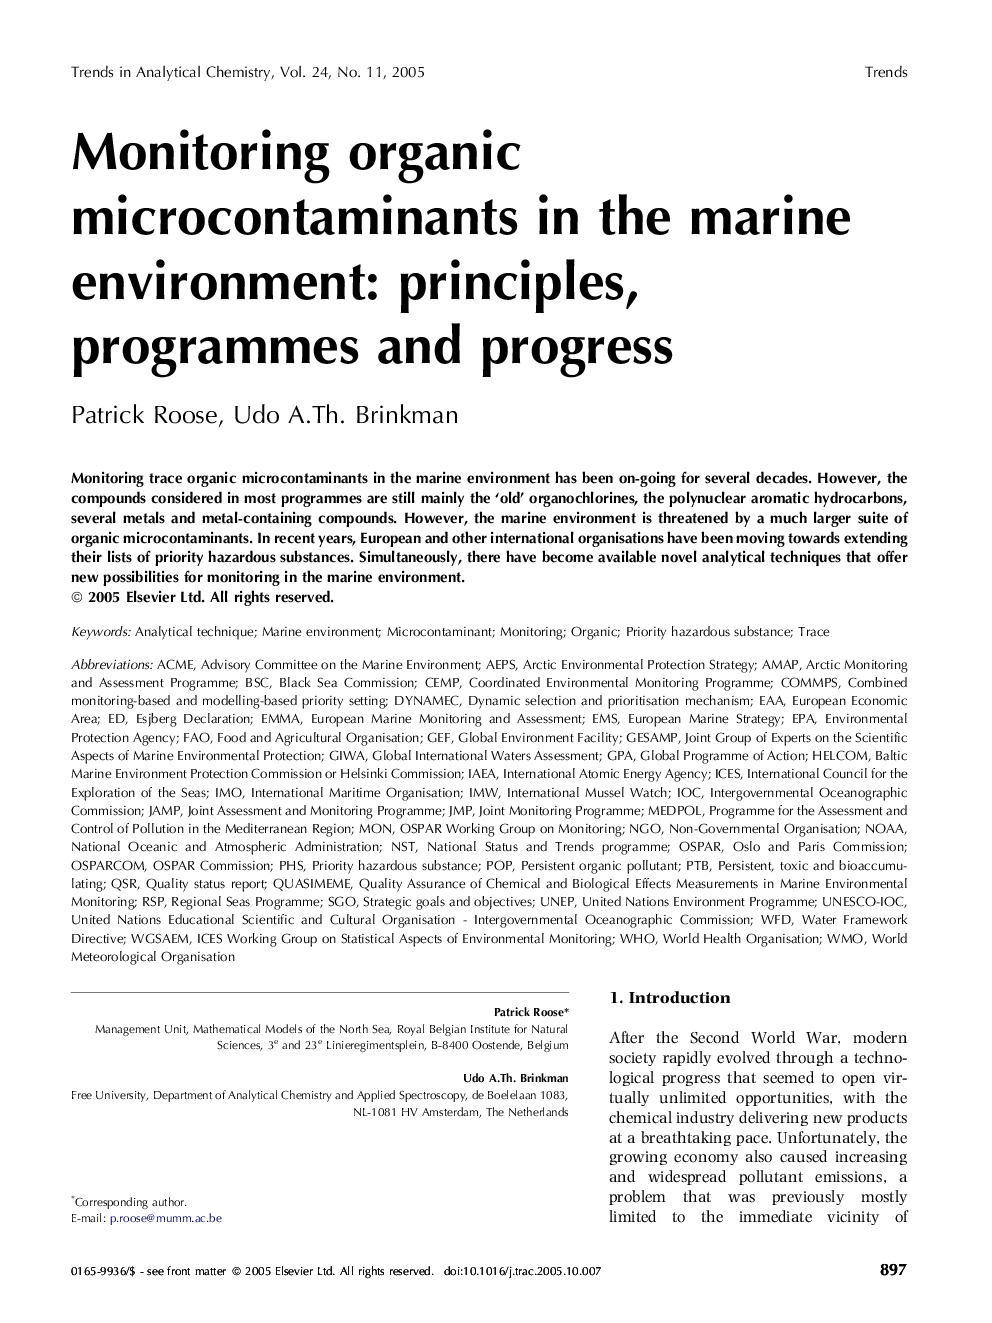 Monitoring organic microcontaminants in the marine environment: principles, programmes and progress